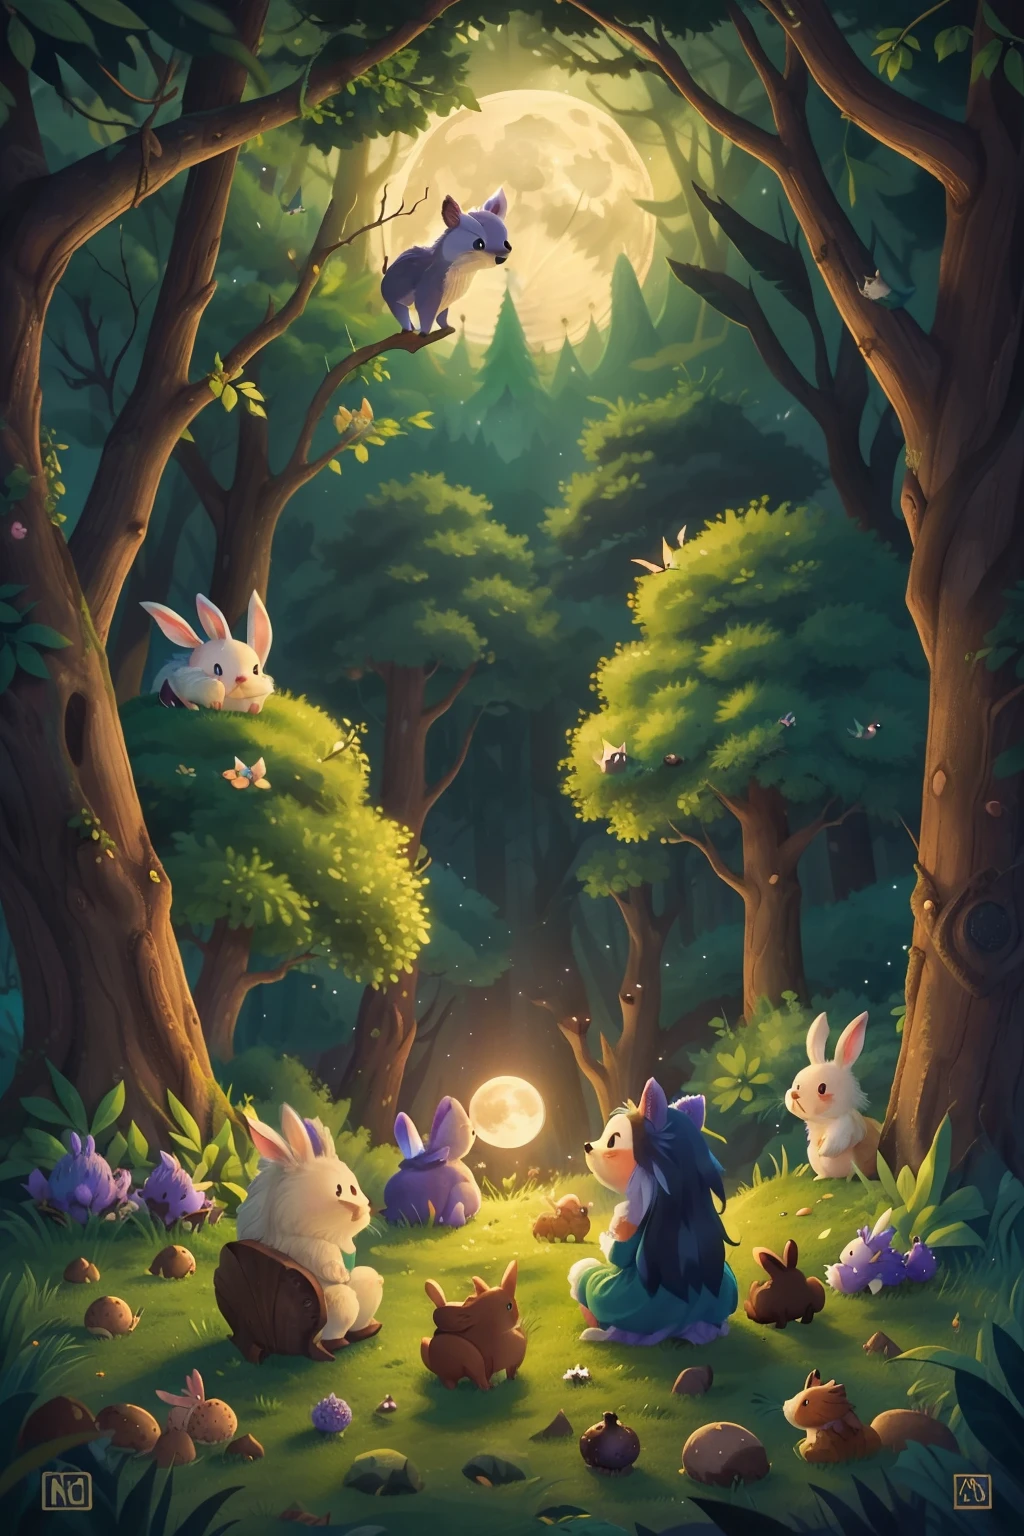 마법에 걸린 숲, 보름달이 언덕 뒤에서 떠오른다, 토끼와 고슴도치가 앉아서 달을 바라본다